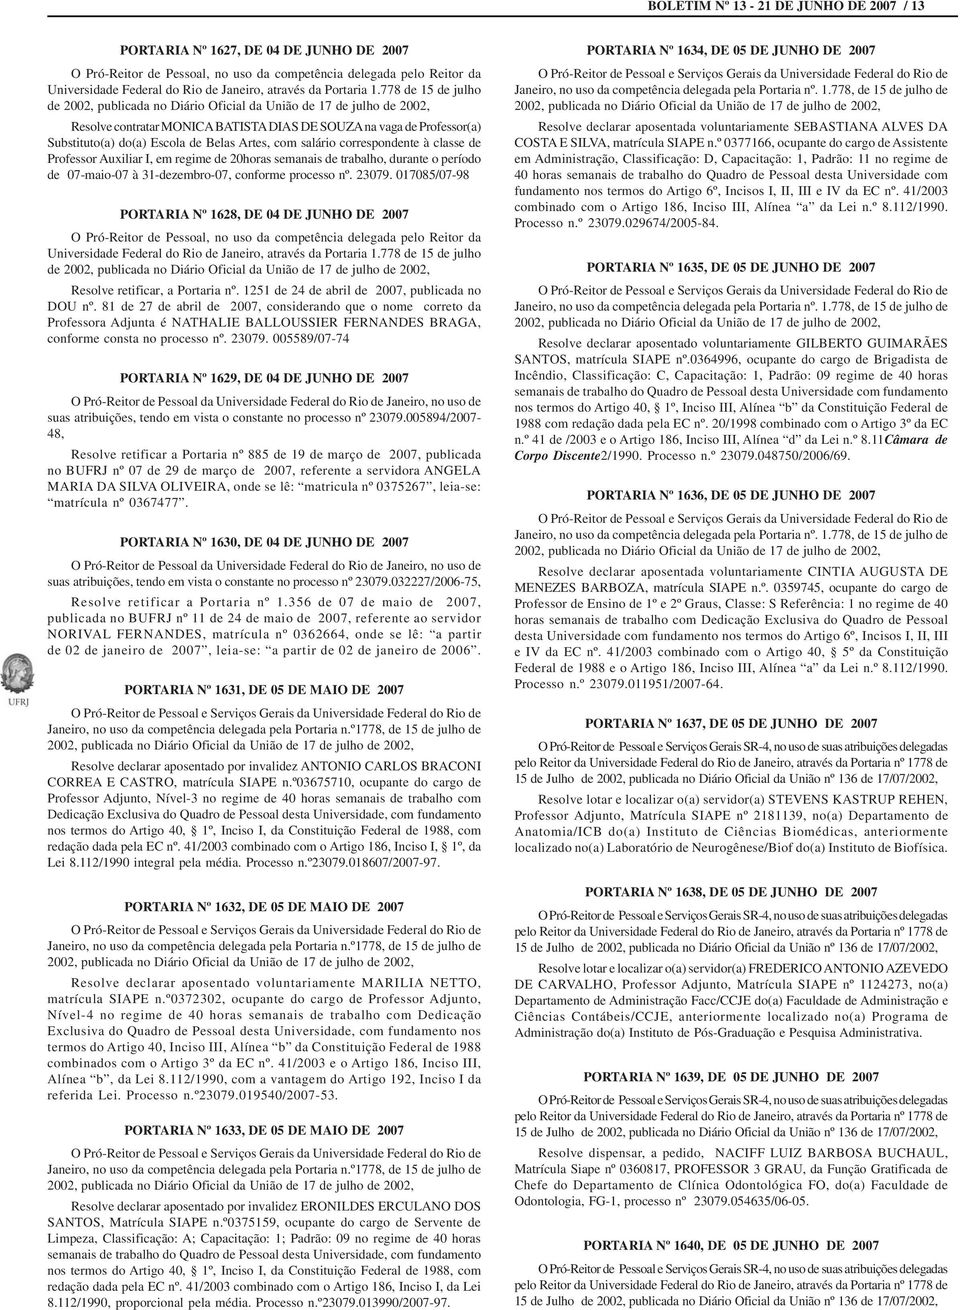 778 de 15 de julho de 2002, publicada no Diário Oficial da União de 17 de julho de 2002, Resolve contratar MONICA BATISTA DIAS DE SOUZA na vaga de Professor(a) Substituto(a) do(a) Escola de Belas